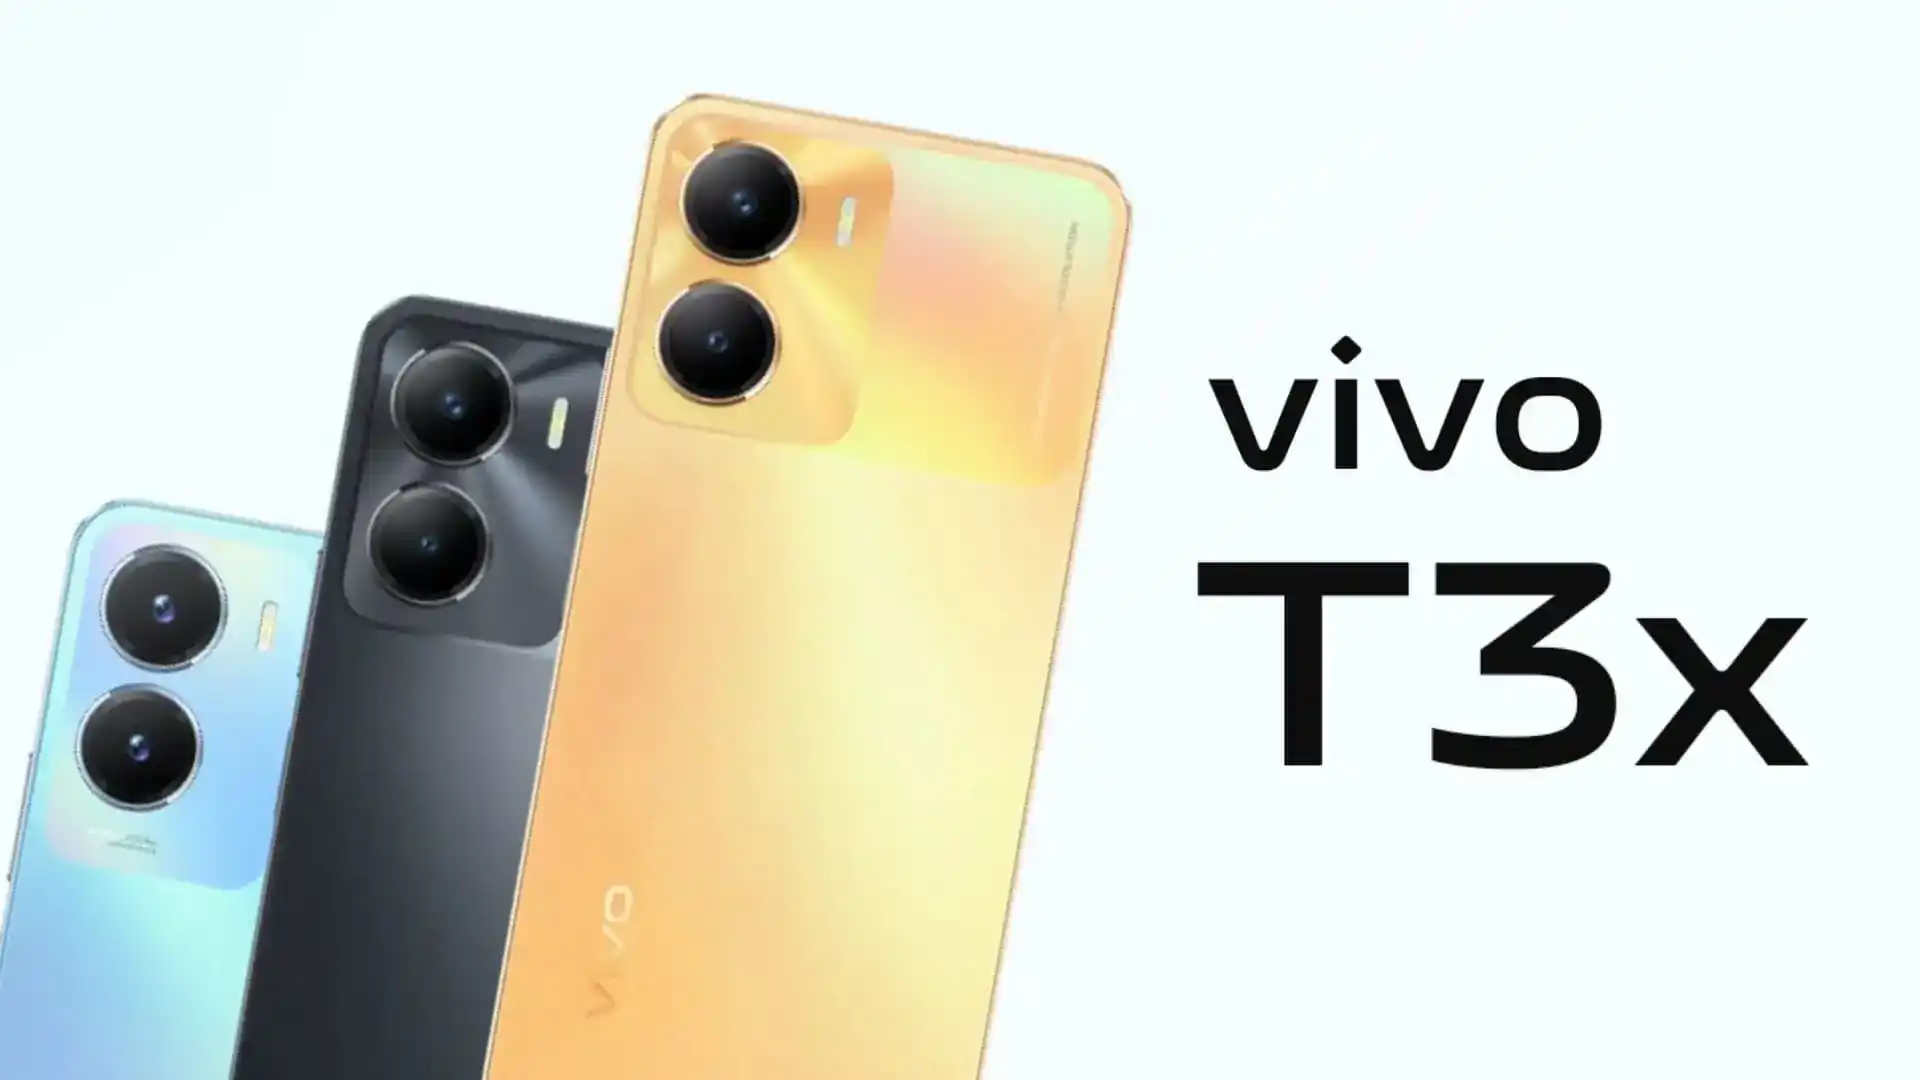 Vivo se prépare à lancer un nouveau smartphone T3x doté d'une batterie puissante et d'un processeur Snapdragon.